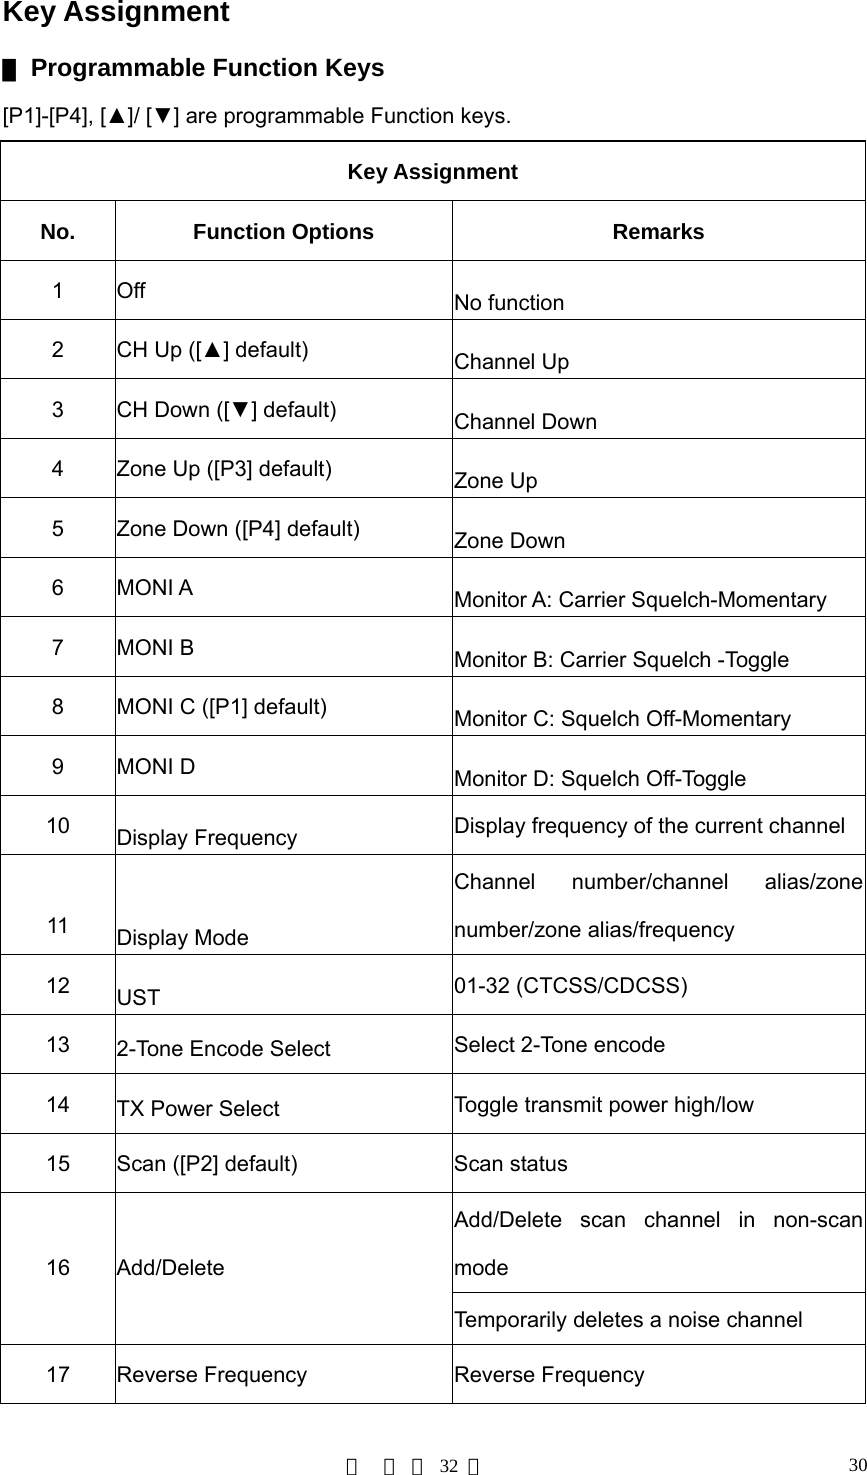 第  页 共 32 页 30Key Assignment ▇ Programmable Function Keys [P1]-[P4], [▲]/ [▼] are programmable Function keys. Key Assignment No. Function Options Remarks 1 Off  No function 2  CH Up ([▲] default)  Channel Up 3  CH Down ([▼] default)  Channel Down 4  Zone Up ([P3] default)  Zone Up 5  Zone Down ([P4] default)  Zone Down 6 MONI A  Monitor A: Carrier Squelch-Momentary   7 MONI B  Monitor B: Carrier Squelch -Toggle 8  MONI C ([P1] default)  Monitor C: Squelch Off-Momentary 9 MONI D  Monitor D: Squelch Off-Toggle 10  Display Frequency  Display frequency of the current channel 11  Display Mode Channel number/channel alias/zone number/zone alias/frequency 12  UST  01-32 (CTCSS/CDCSS) 13  2-Tone Encode Select  Select 2-Tone encode 14  TX Power Select  Toggle transmit power high/low 15  Scan ([P2] default)  Scan status Add/Delete scan channel in non-scan mode 16 Add/Delete Temporarily deletes a noise channel 17  Reverse Frequency  Reverse Frequency 